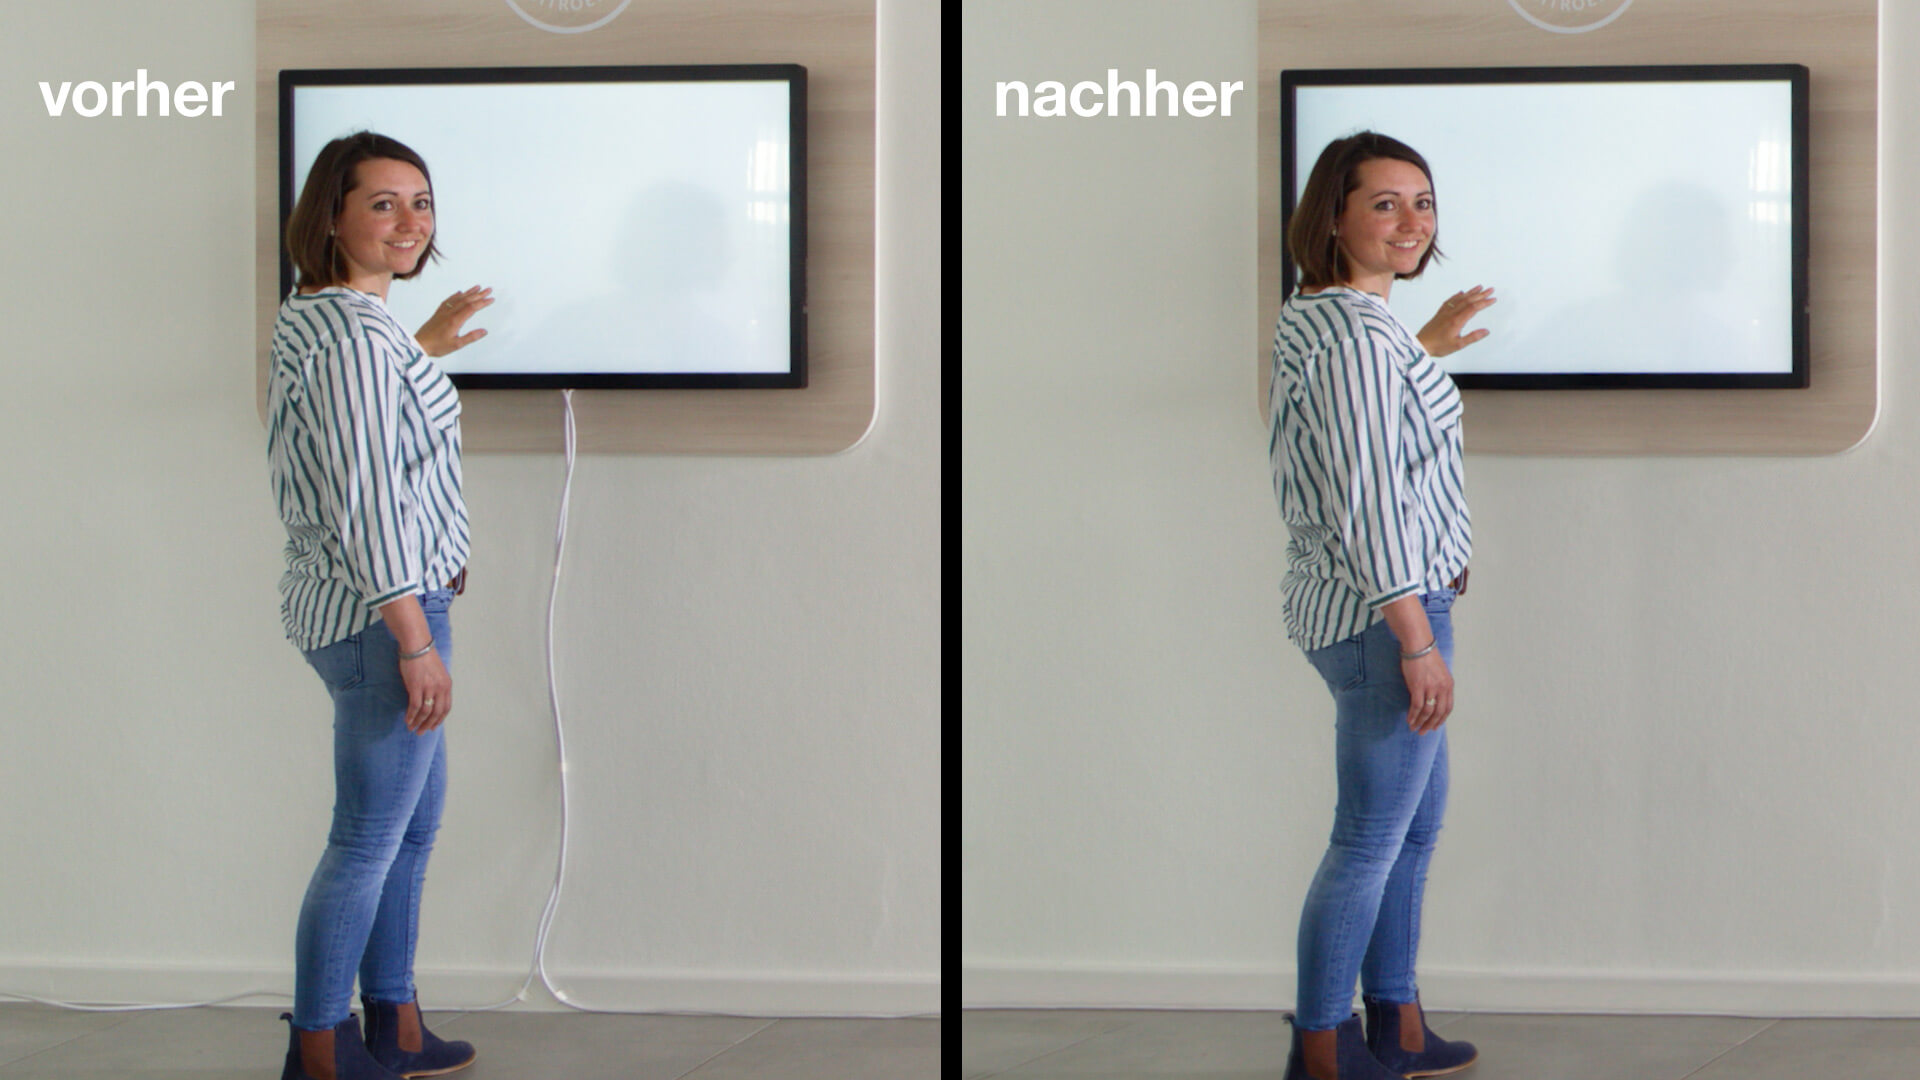 Vorher-Nachher-Standbilder des Präsentationsfilms: Frau vor Monitor - mit und ohne provisorisch verlegter Kabel